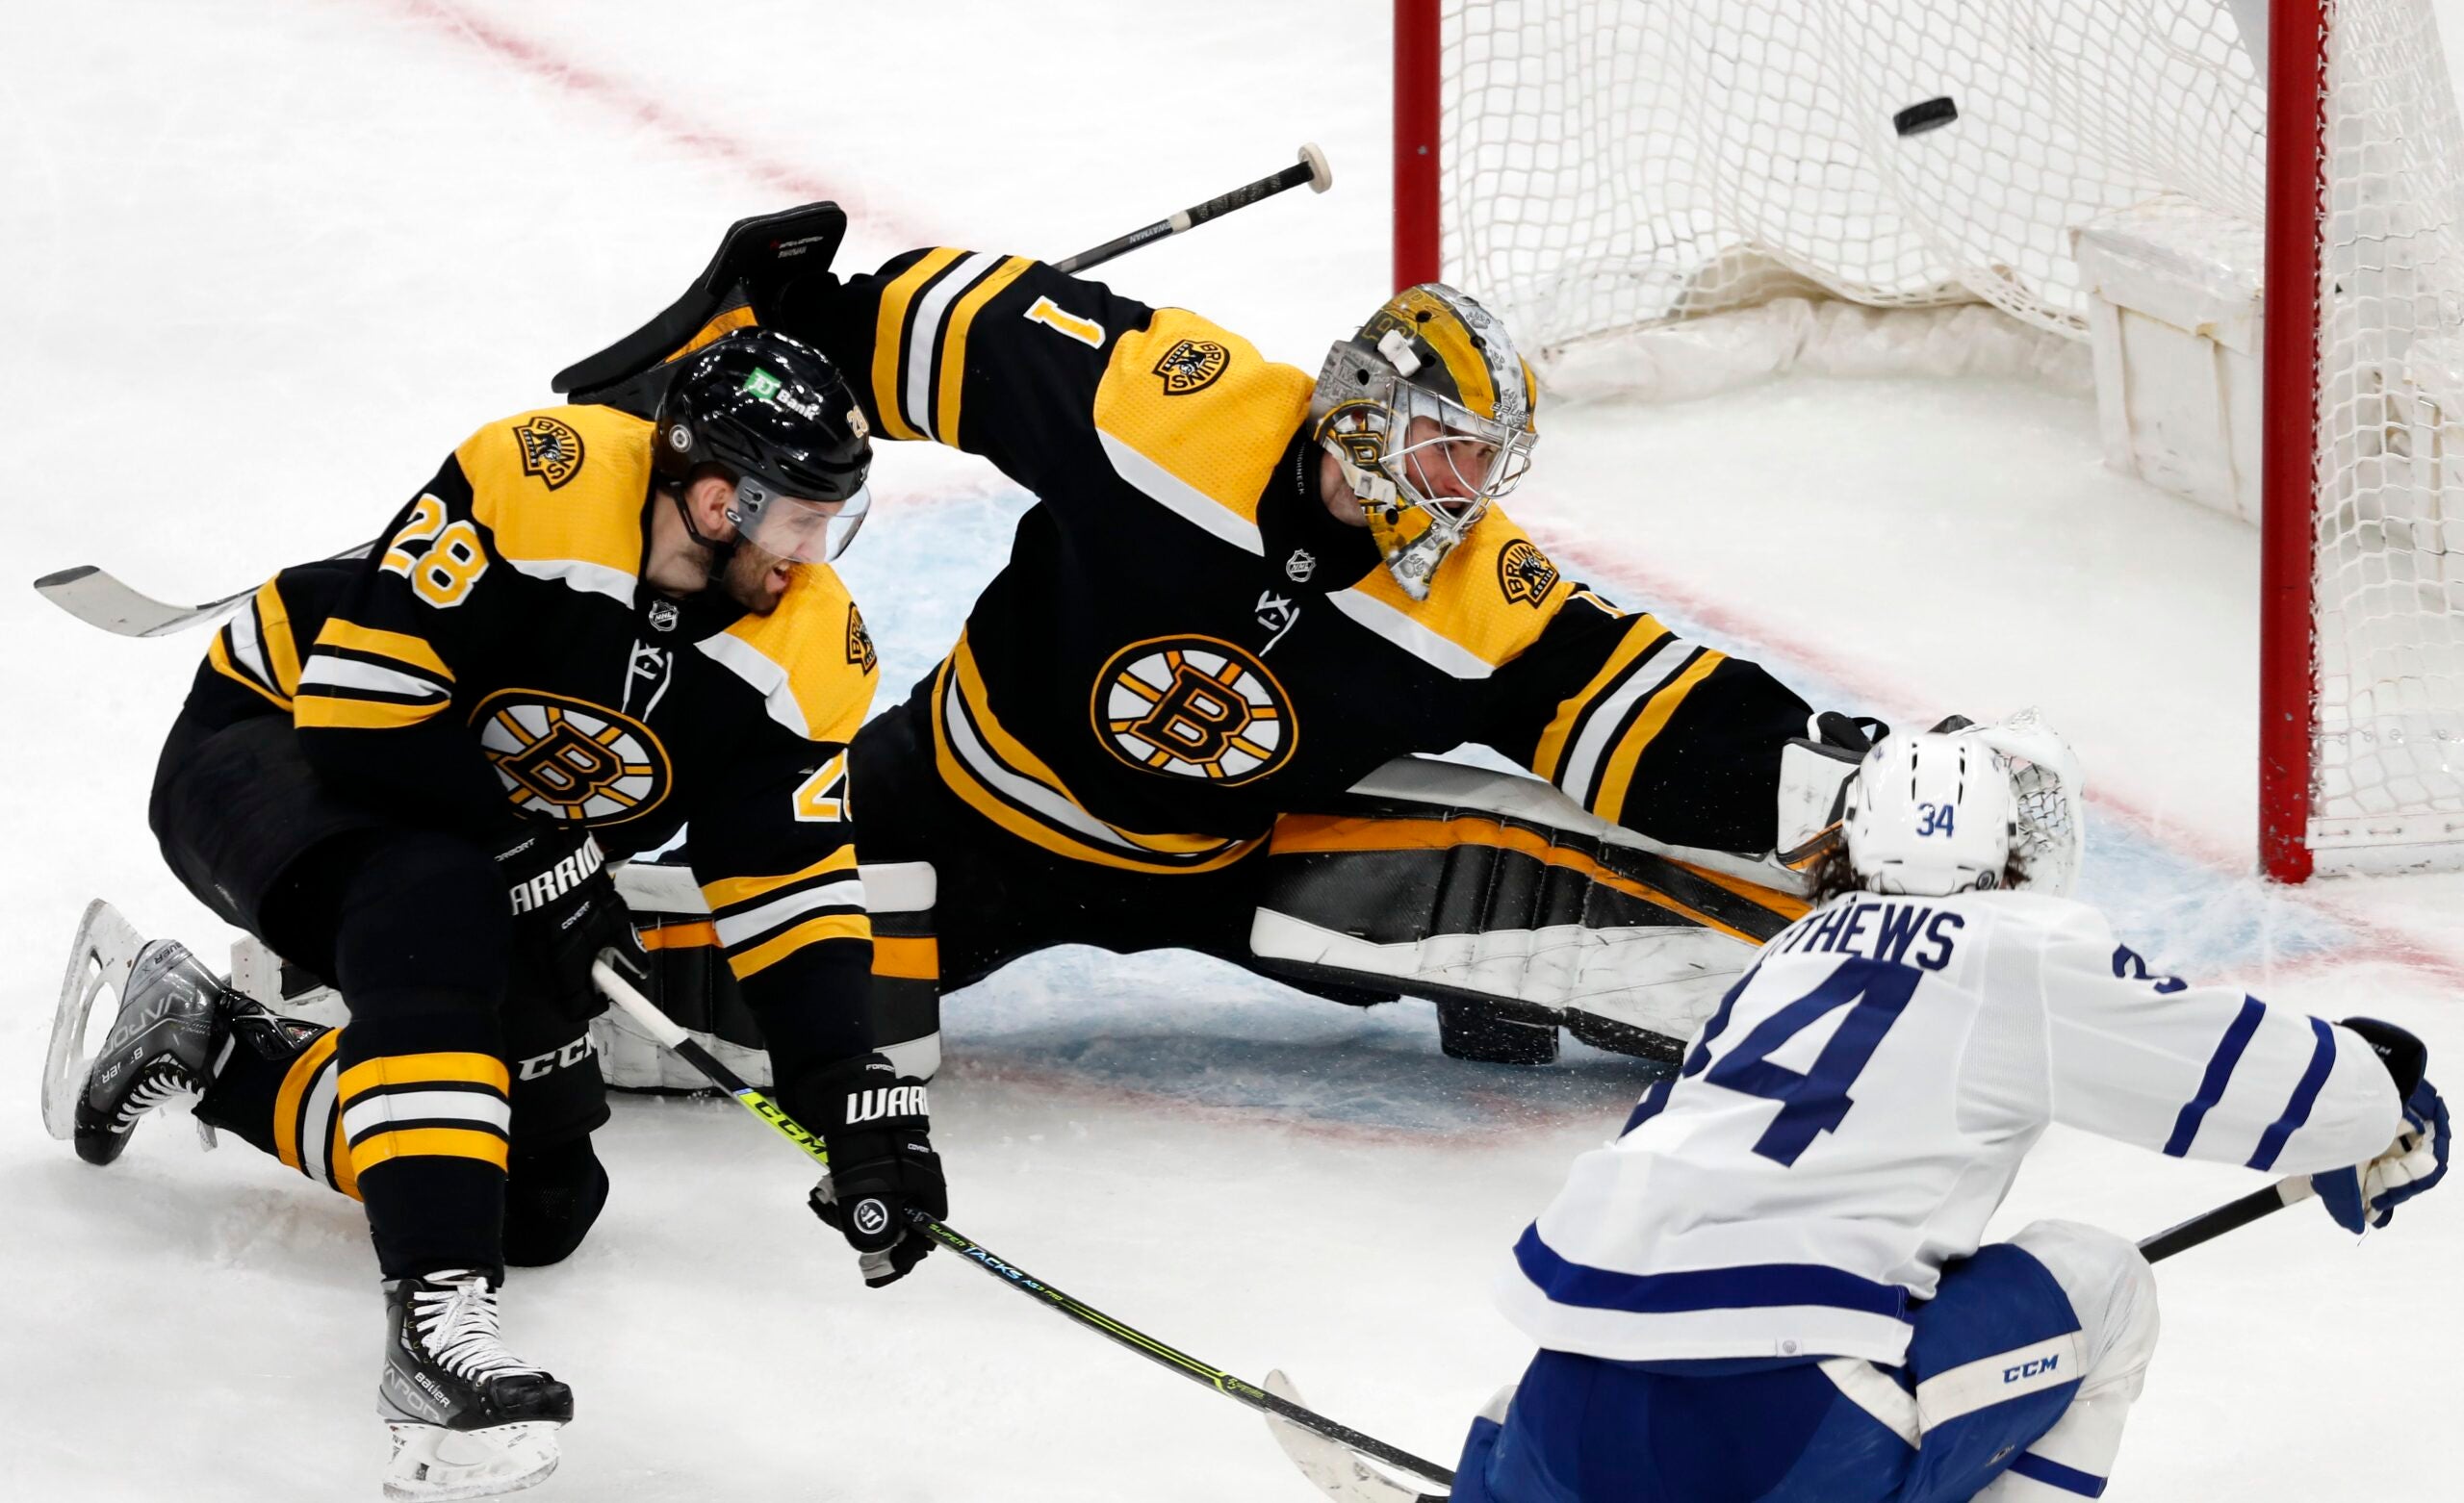 Rookie Bedard scores, but Pastrnak pots 2 to lead Bruins past